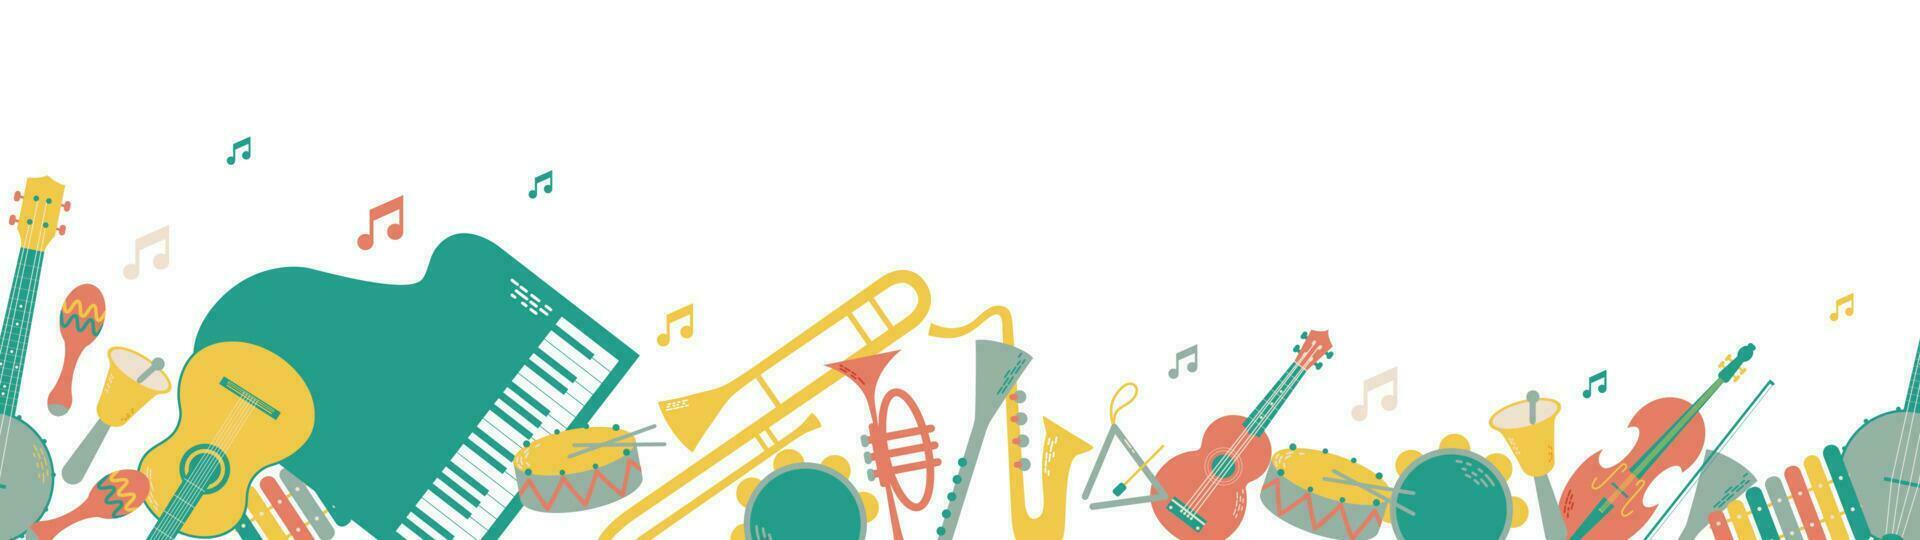 vector lang achtergrond of banier met musical instrumenten. orkest omvat trommel, maracas, driehoek, klok, xylofoon, tamboerijn, piano, trompet, saxofoon, klarinet, trombone, gitaar, banjo, ukulele